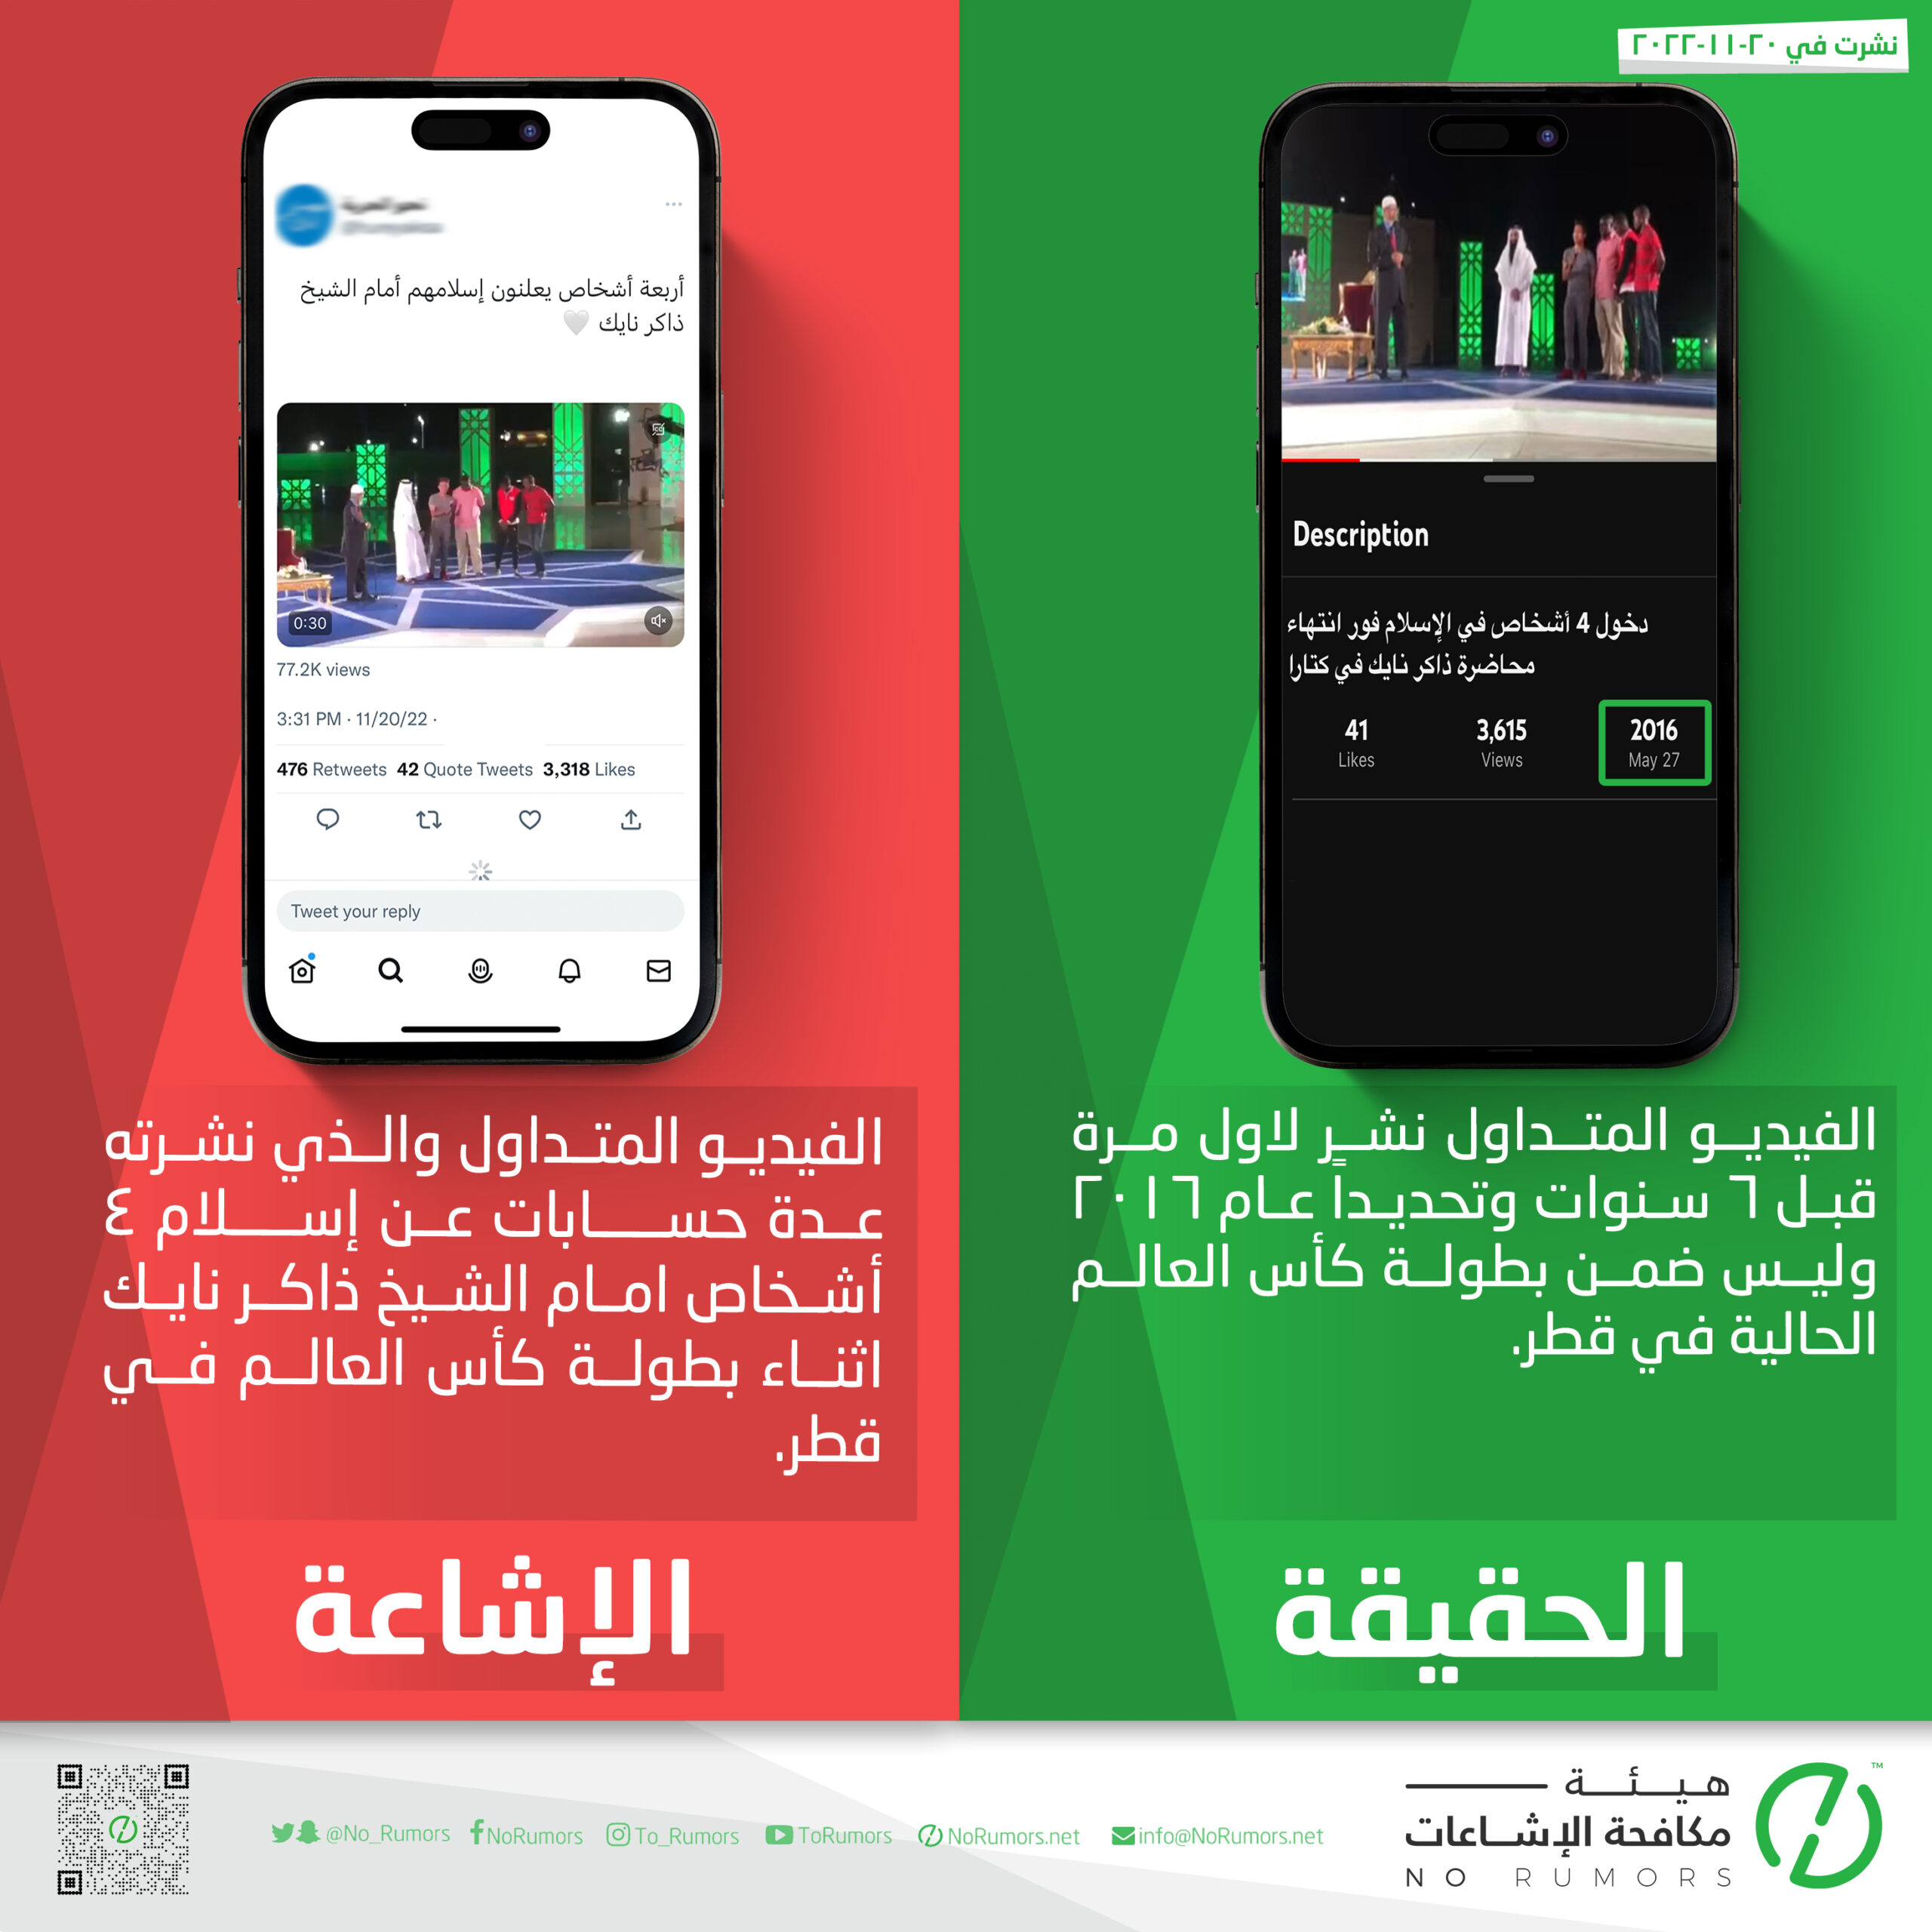 حقيقة الفيديو المتداول عن إسلام ٤ أشخاص امام الشيخ ذاكر نايك اثناء بطولة كأس العالم في قطر